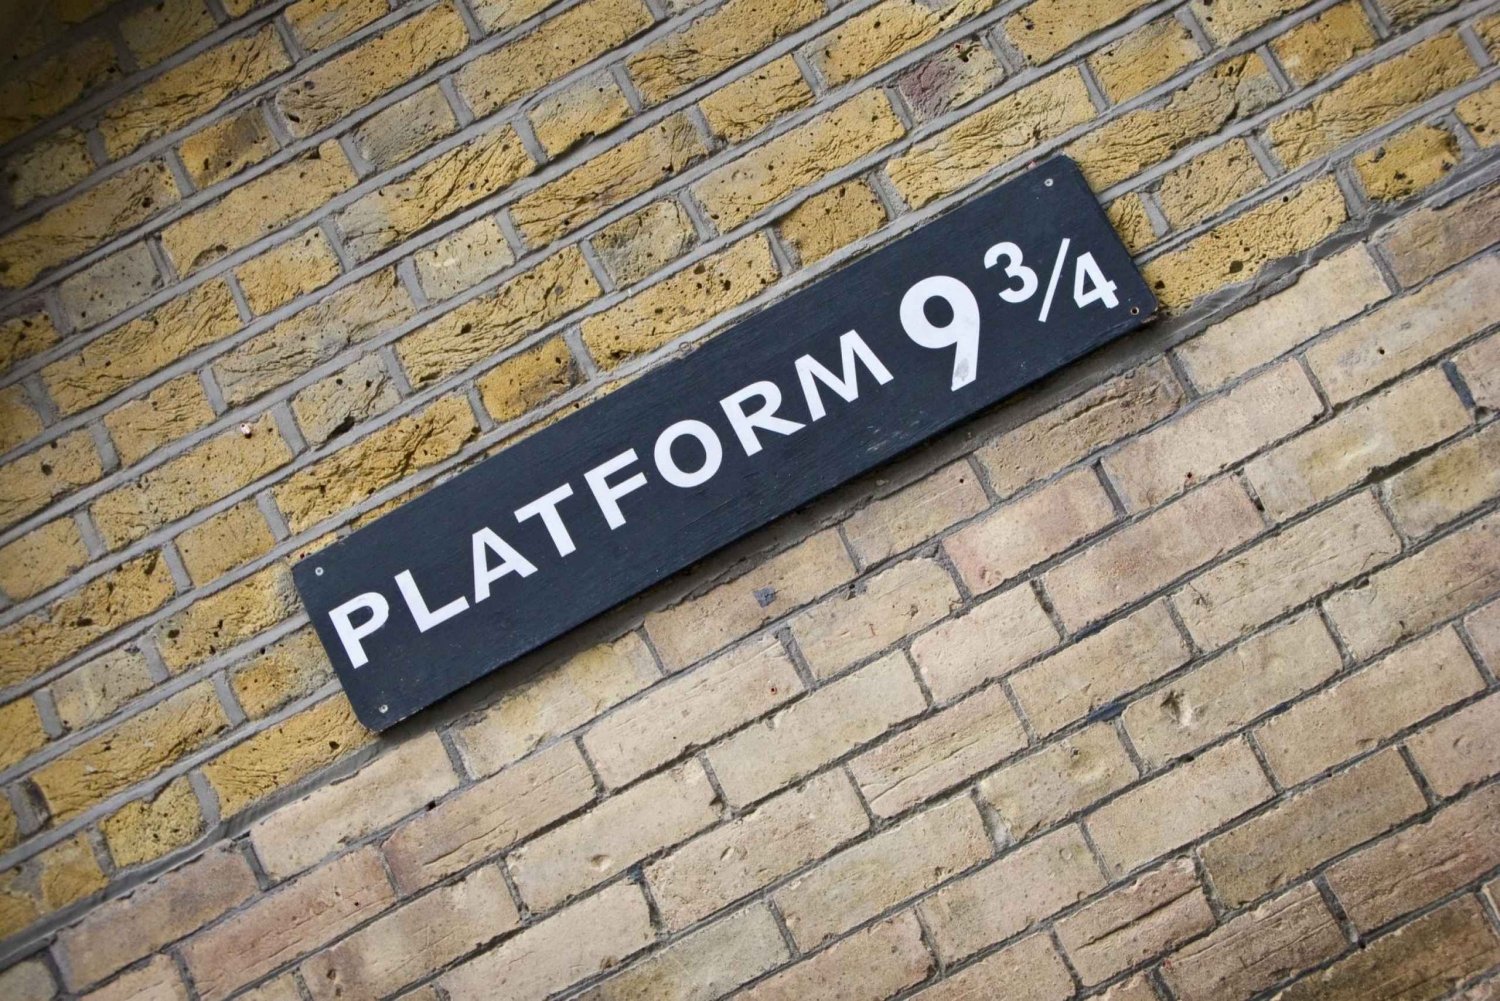 Londres : visite des lieux de tournage de Harry Potter